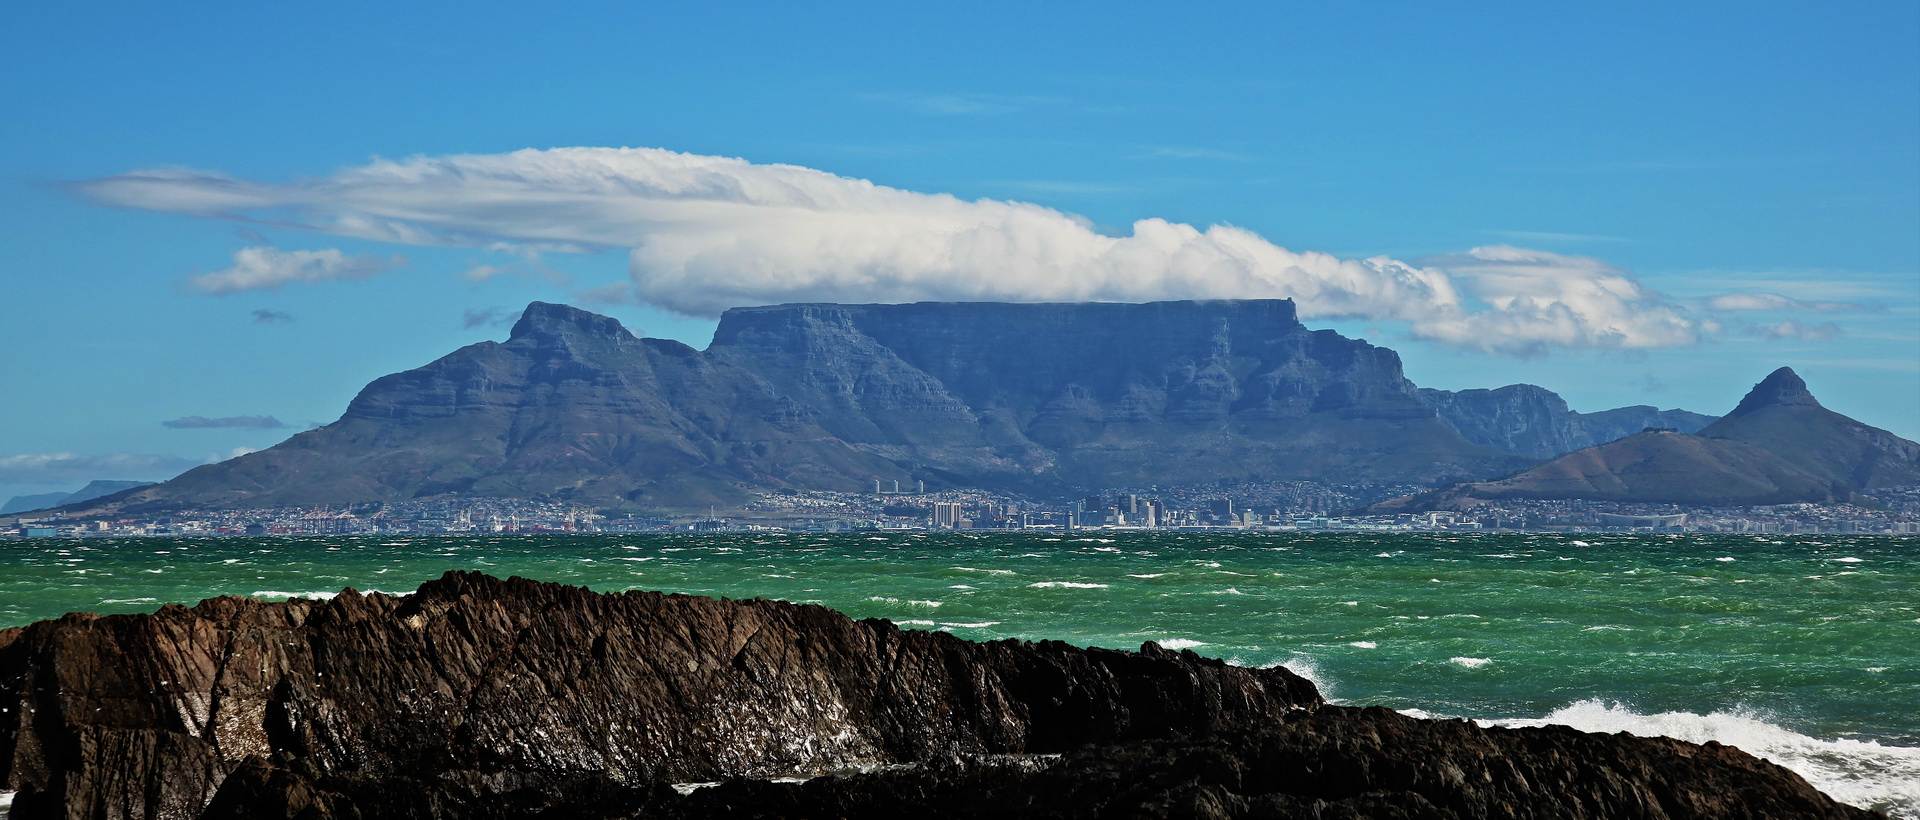 Voyage sur-mesure, Table Mountain : quelles randonnées faire ?